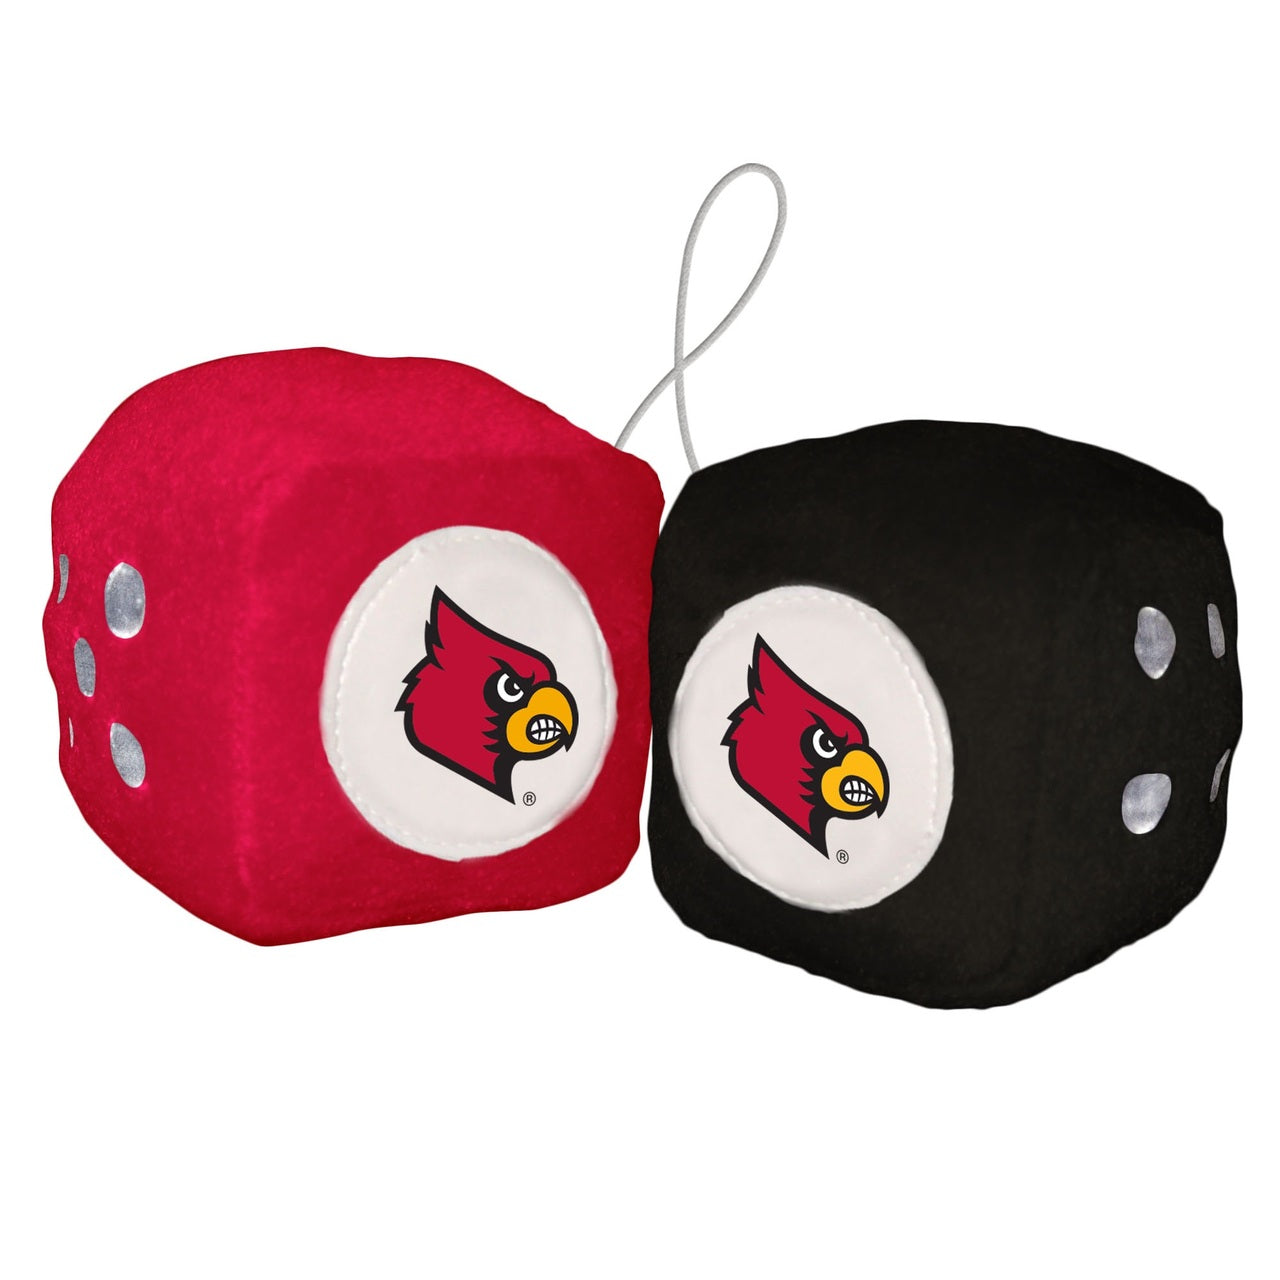 Louisville Cardinals Plush Fuzzy Dice by Fremont Die